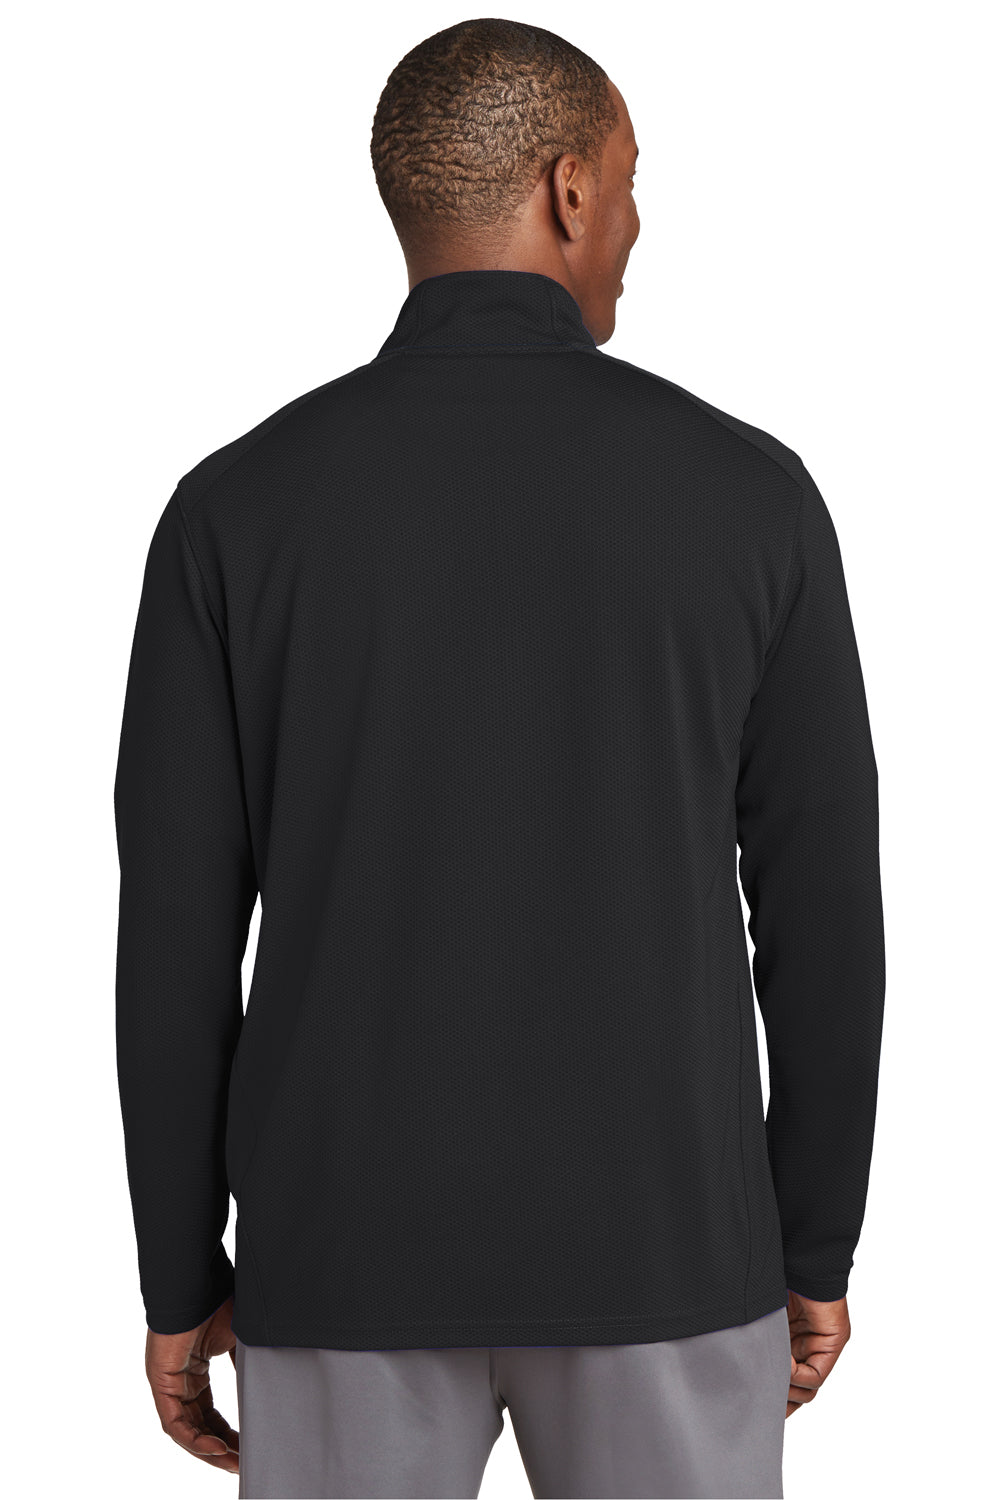 Sport-Tek ST860 Mens Sport-Wick Moisture Wicking 1/4 Zip Sweatshirt Black Back